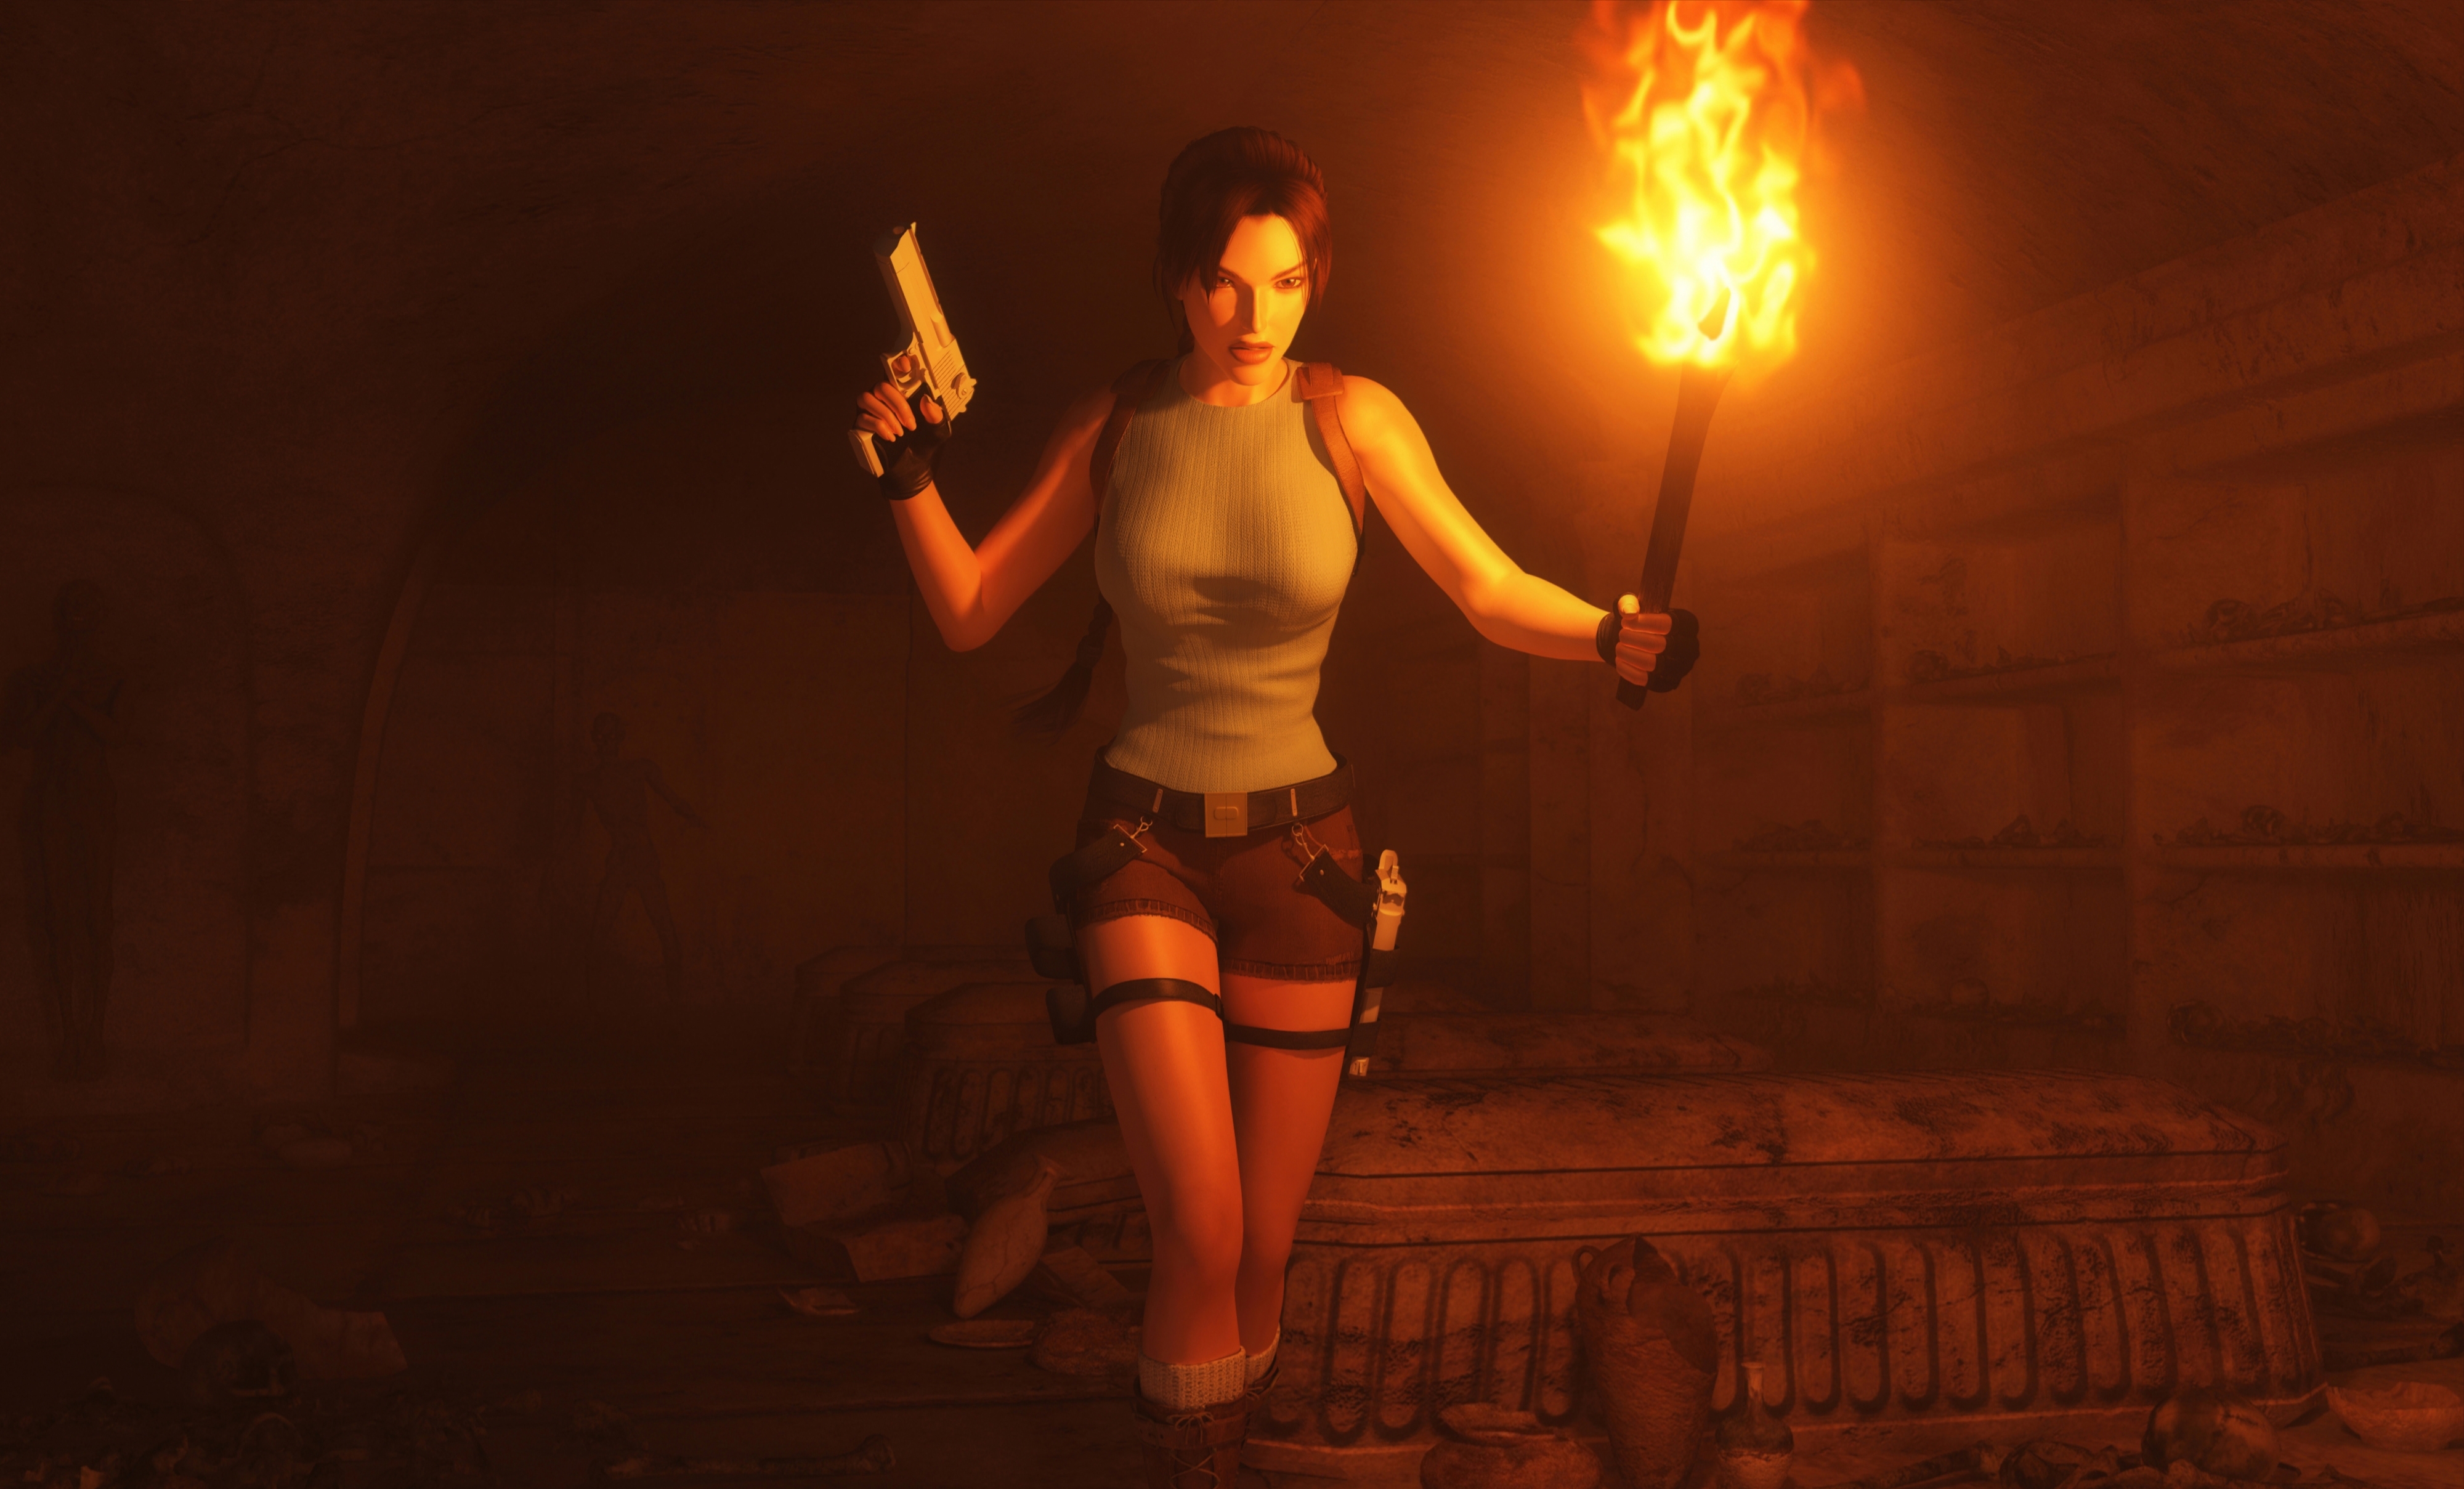 Descargar fondos de escritorio de Tomb Raider: The Last Revelation HD